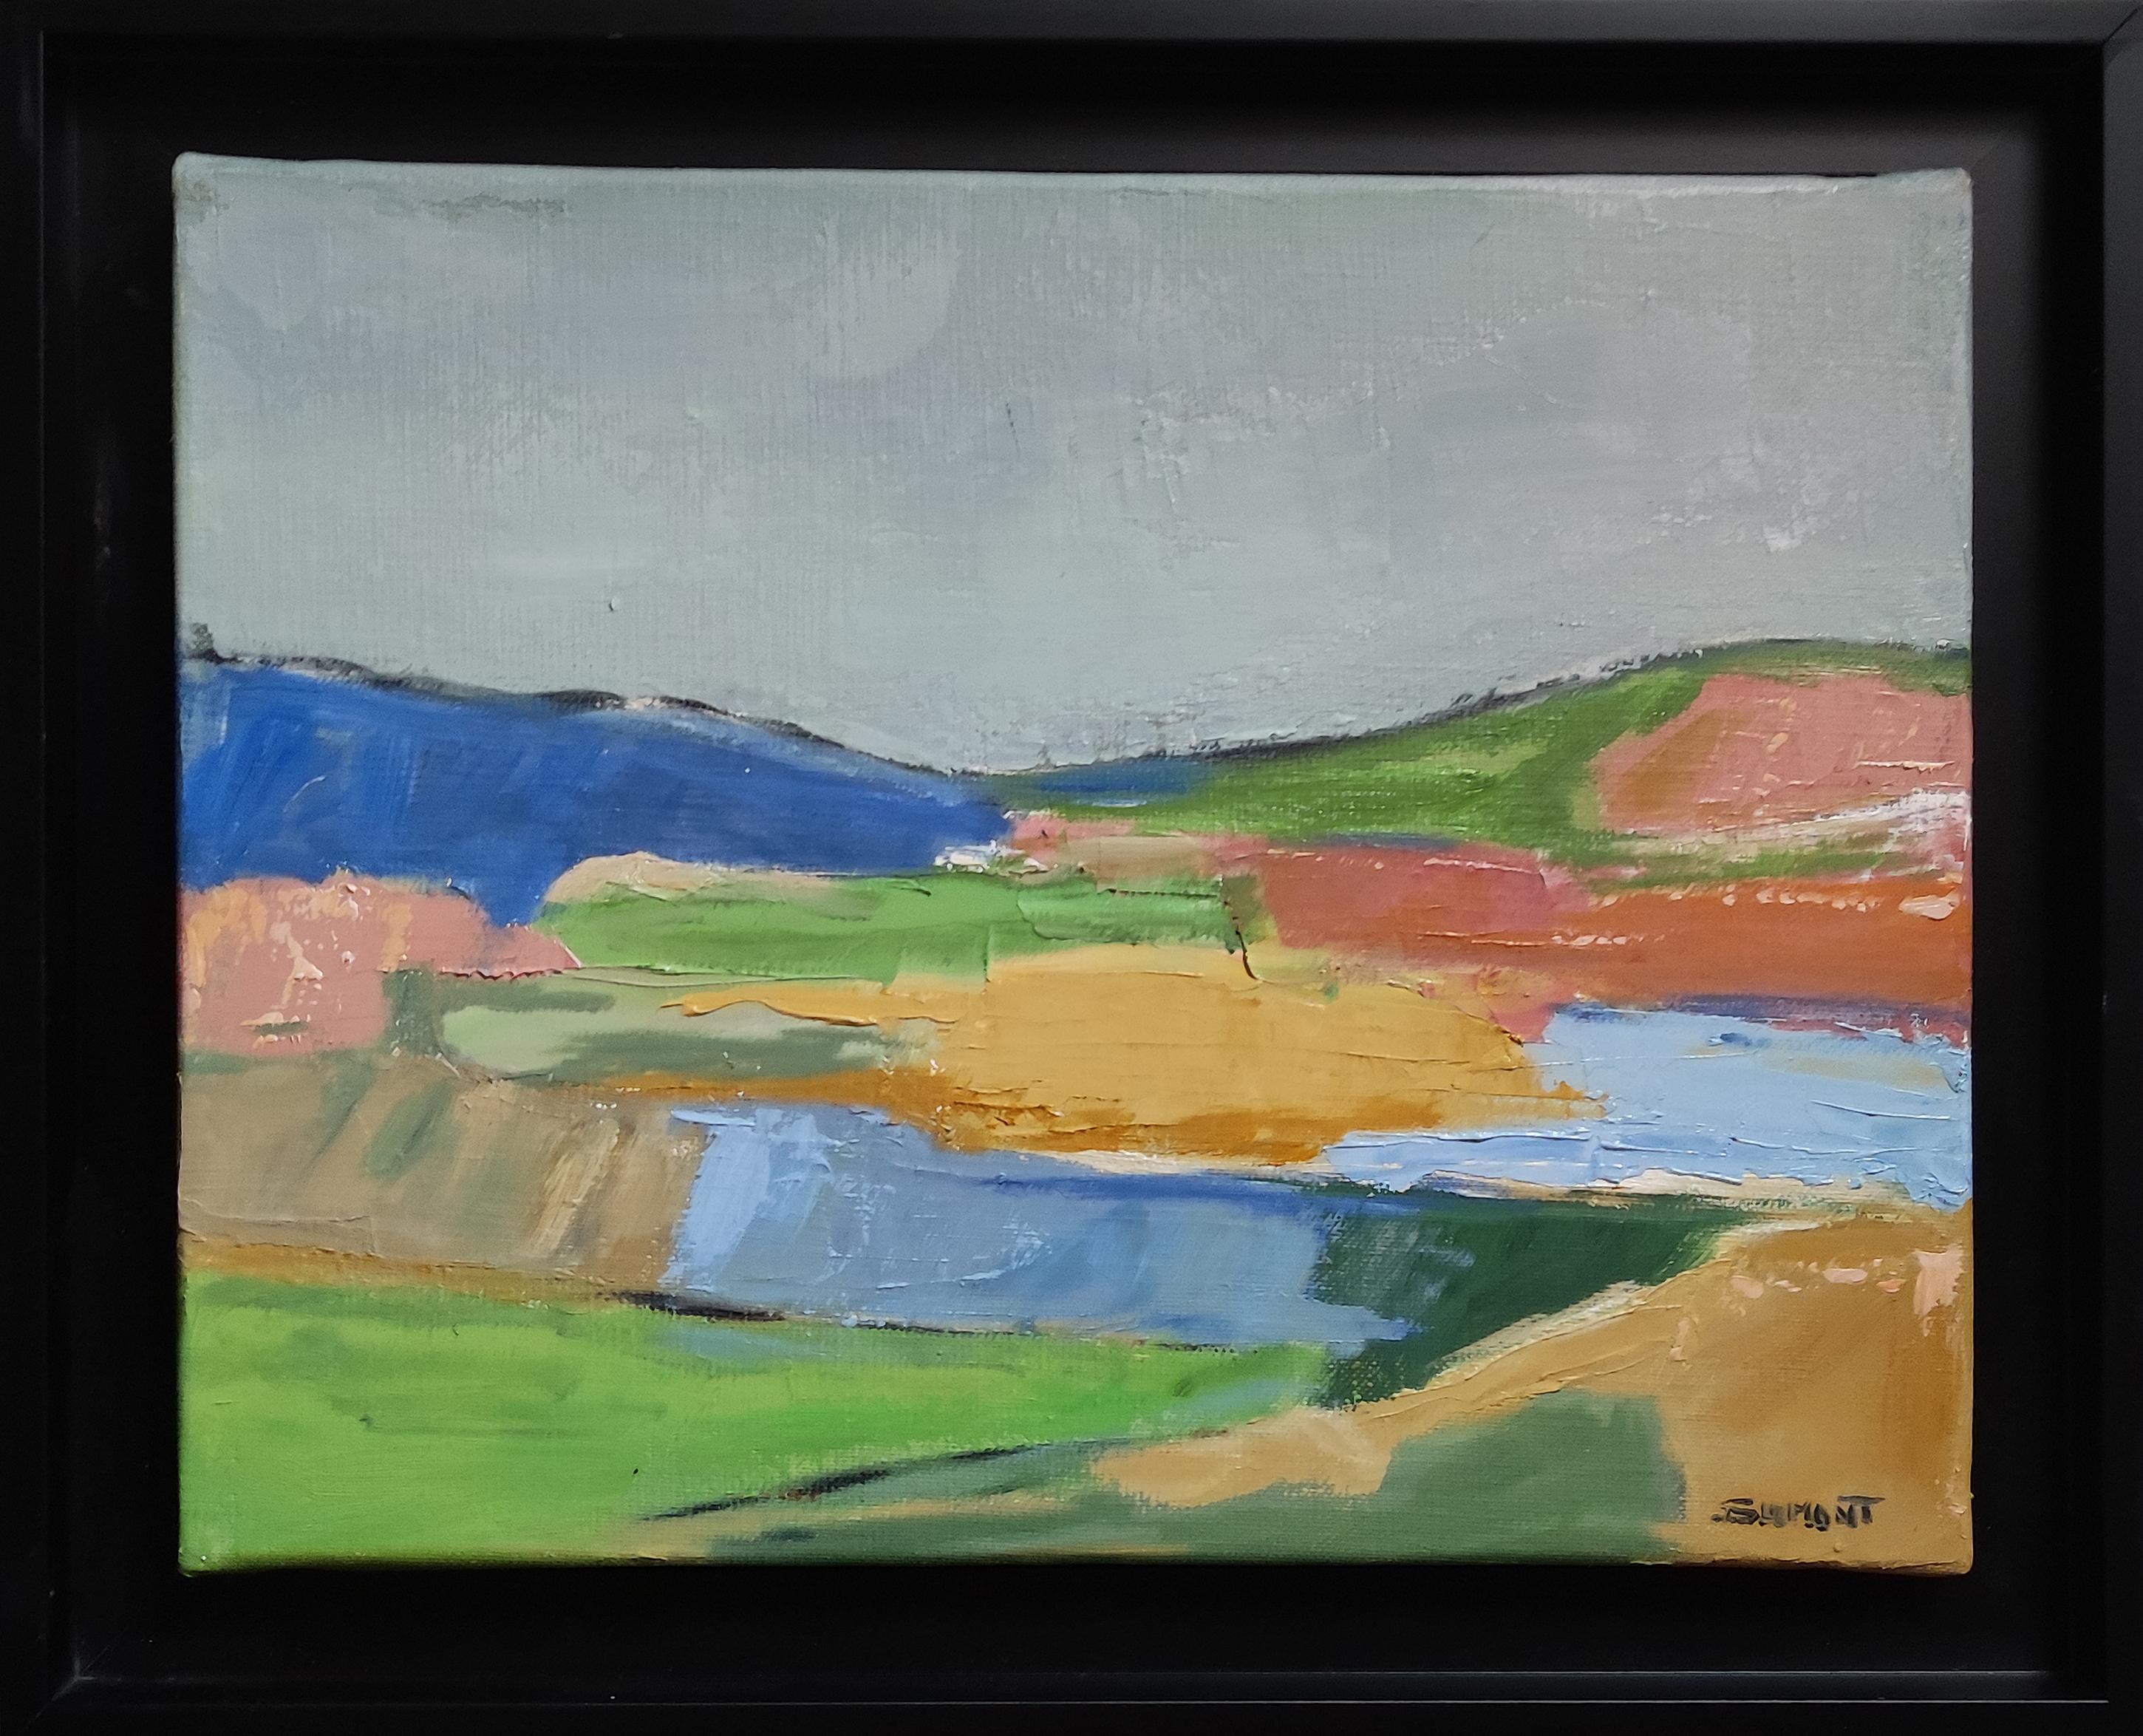 SOPHIE DUMONT Landscape Painting - Couleurs éphemeres, landscape, oil on canvas, expressionism, multicolor, french